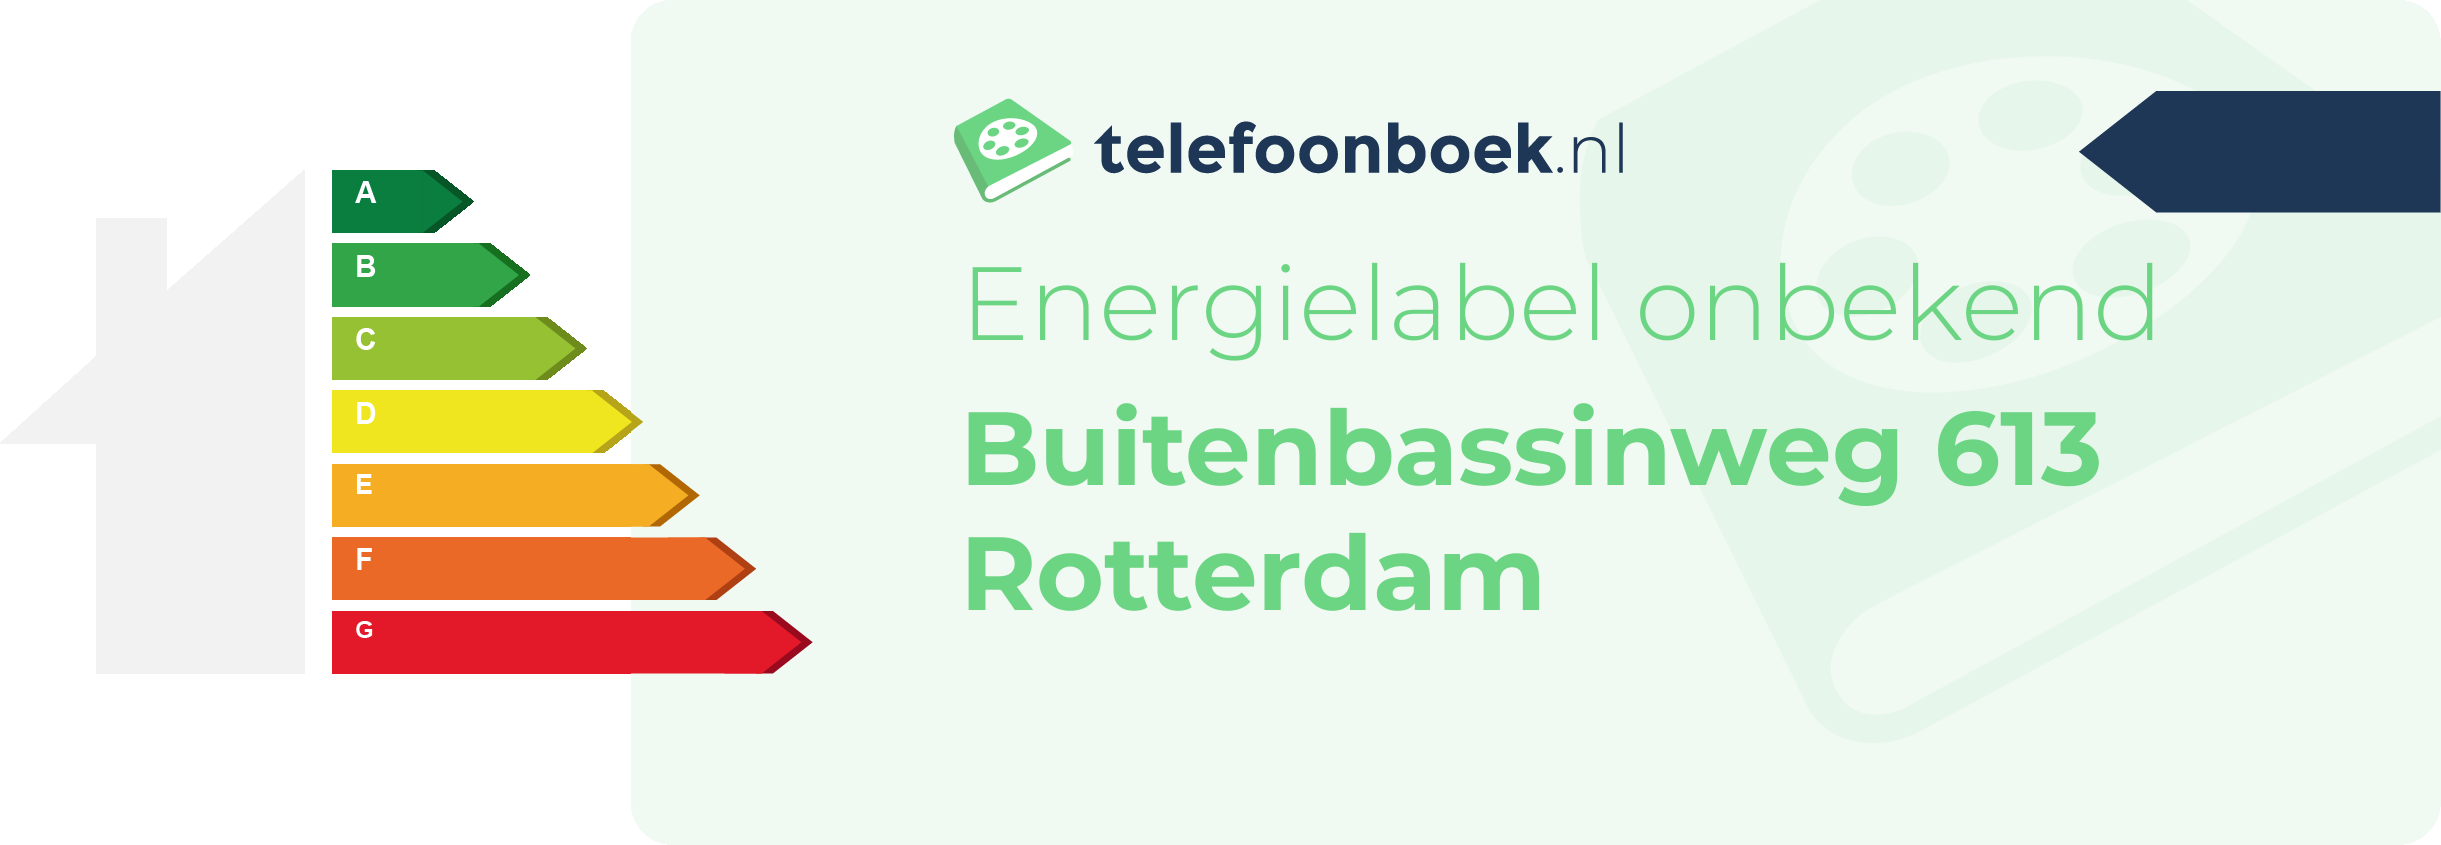 Energielabel Buitenbassinweg 613 Rotterdam